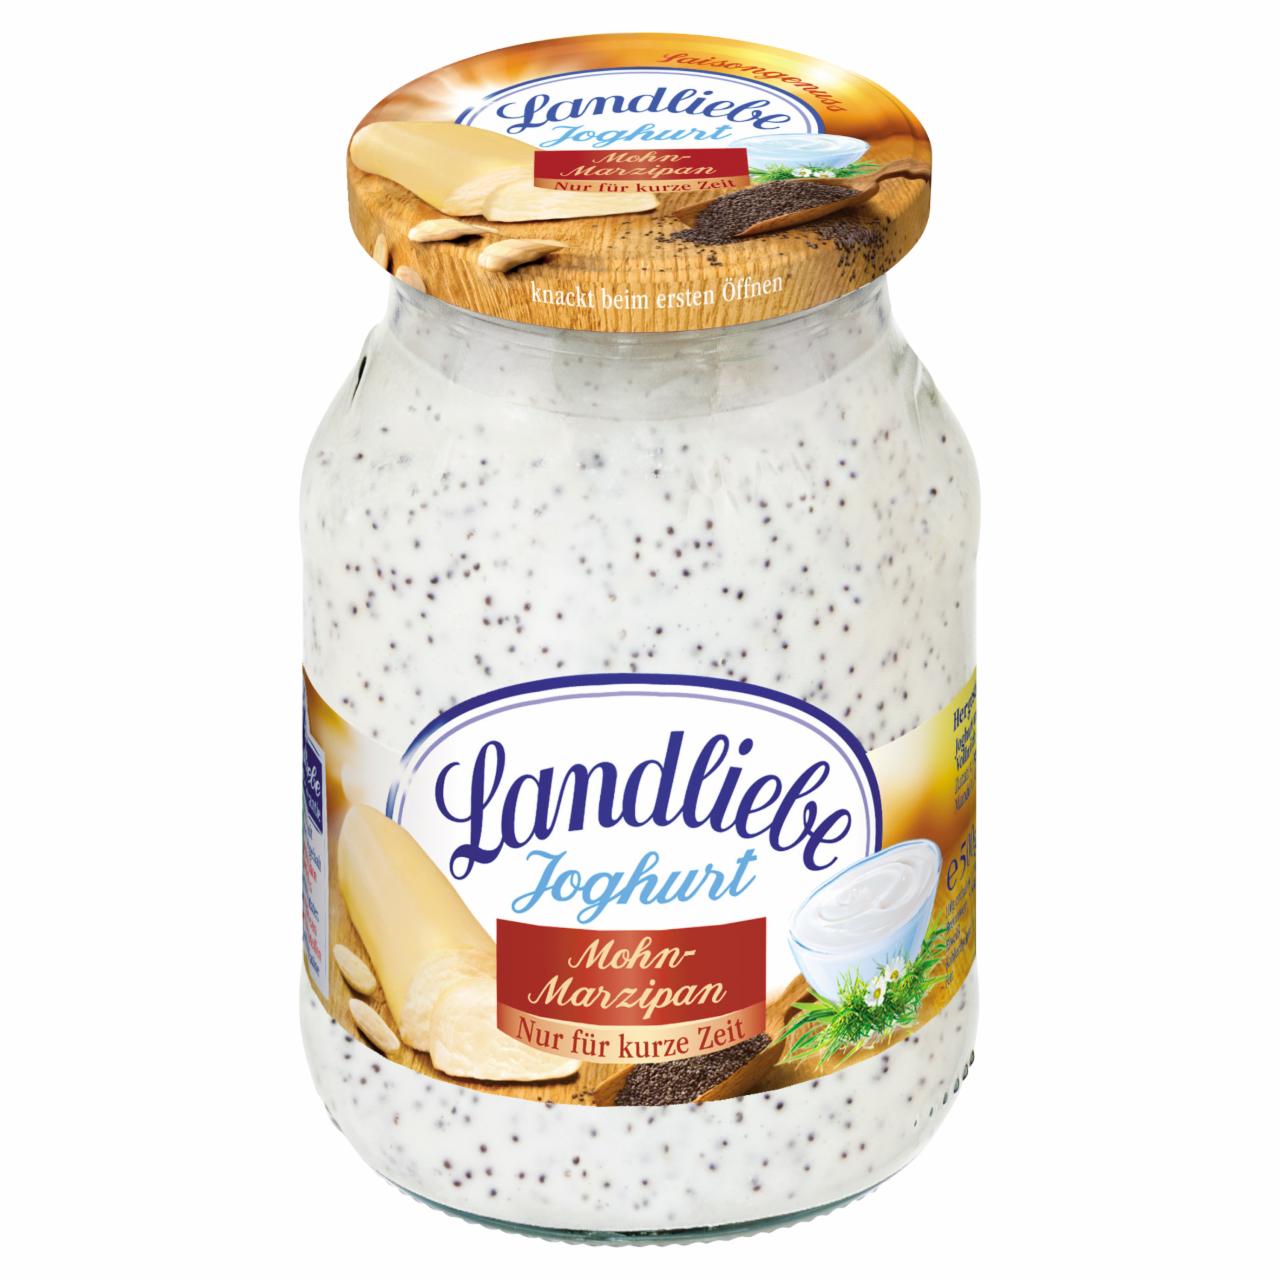 Képek - Landliebe mákos-marcipános joghurt 500 g